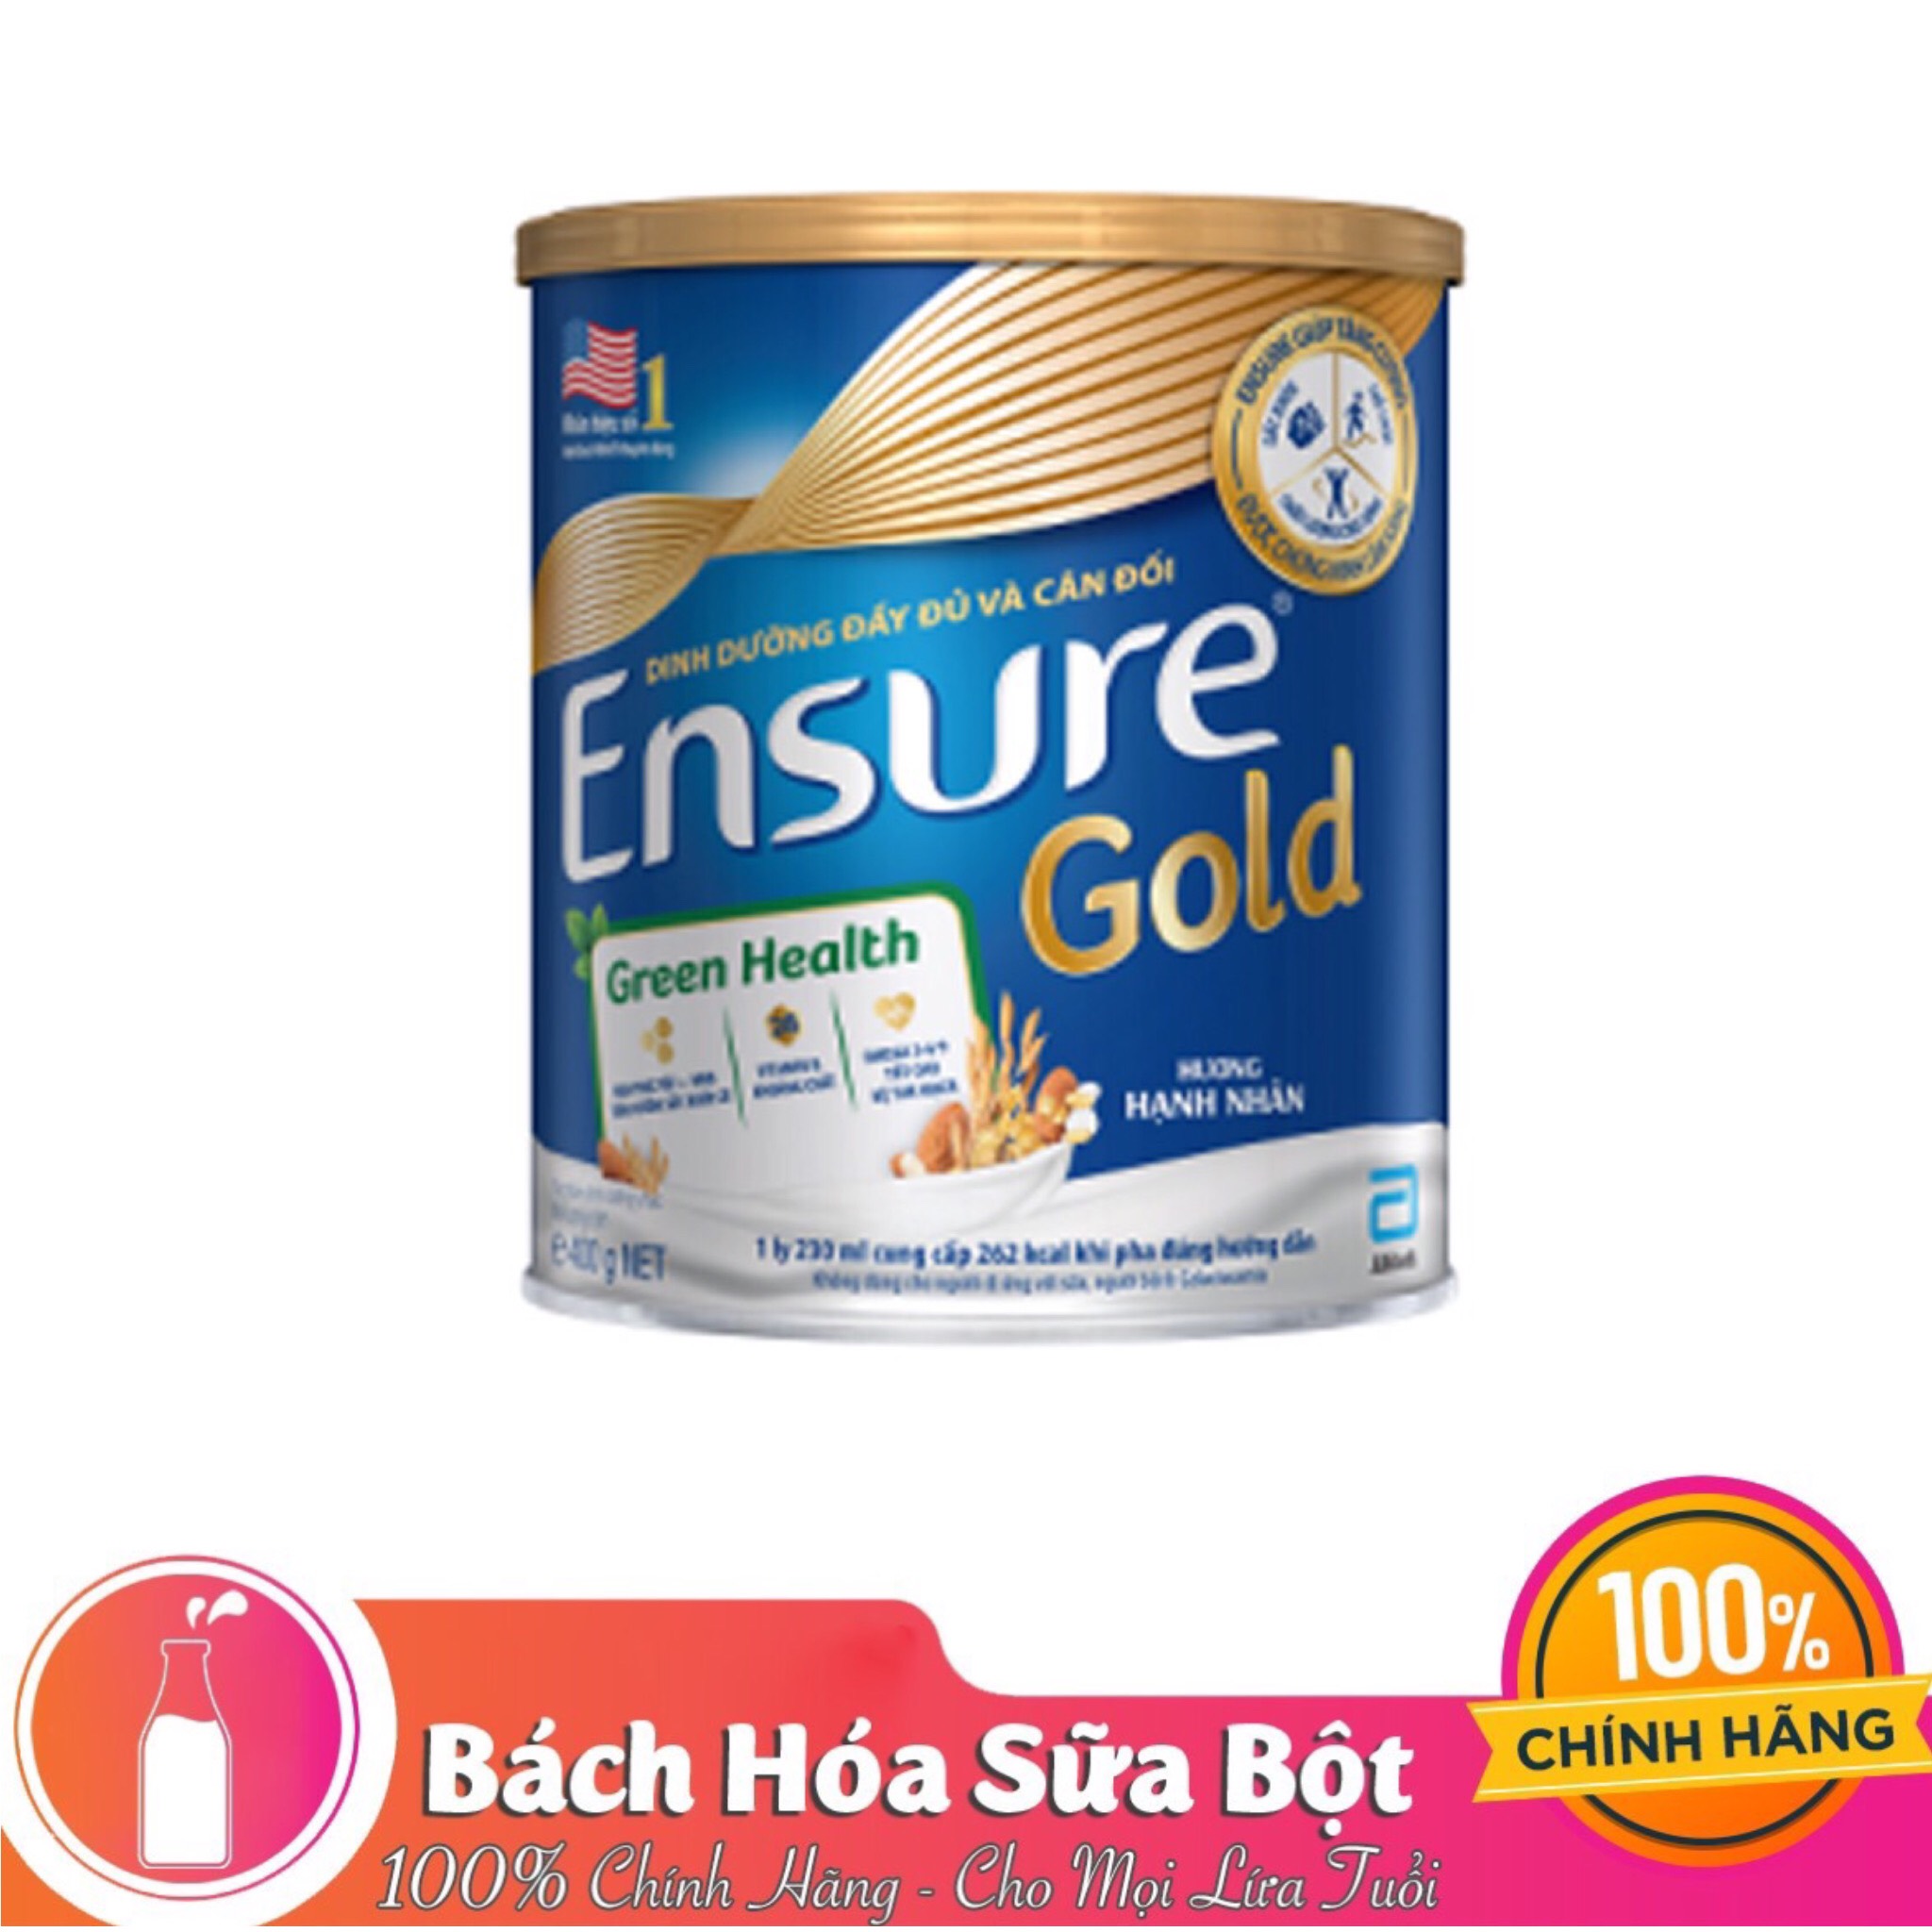 Sữa Bột Ensure Gold Green Health Hương Hạnh Nhân (400g)